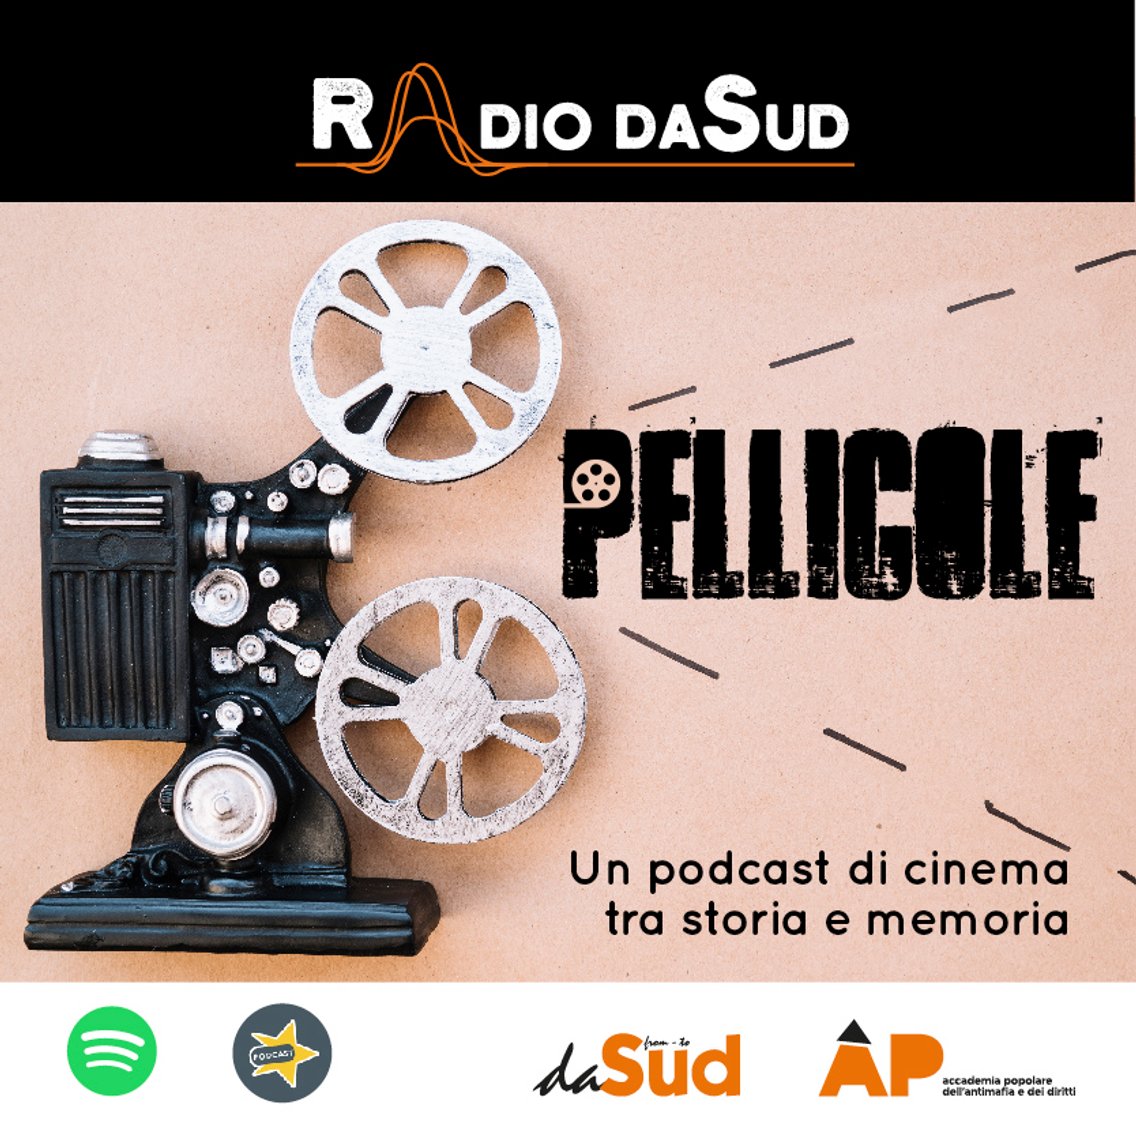 Pellicole - Un podcast di cinema - Cover Image